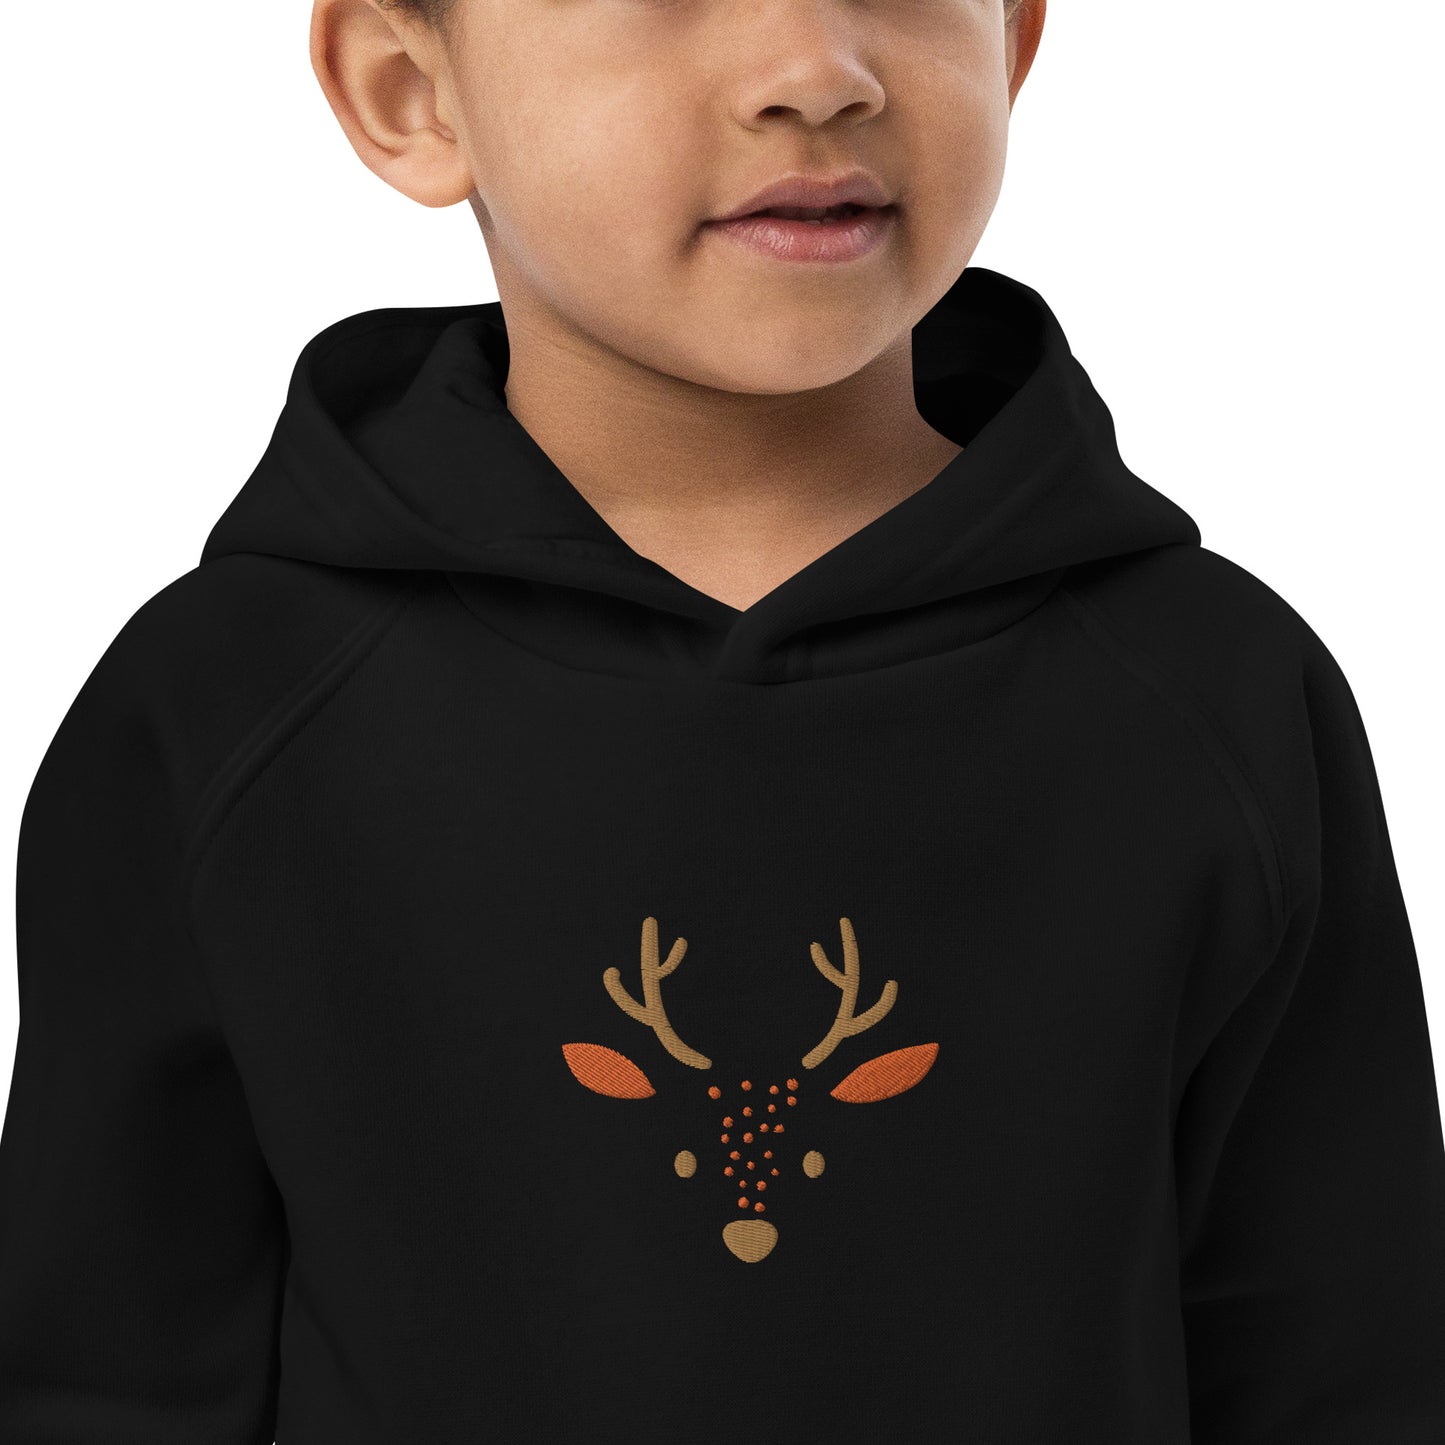 Deer 2 Kids Eco Hoodie avec des animaux mignons, pull en coton biologique pour enfants, idée cadeau pour les enfants, sweat à capuche doux pour les enfants pour Noël